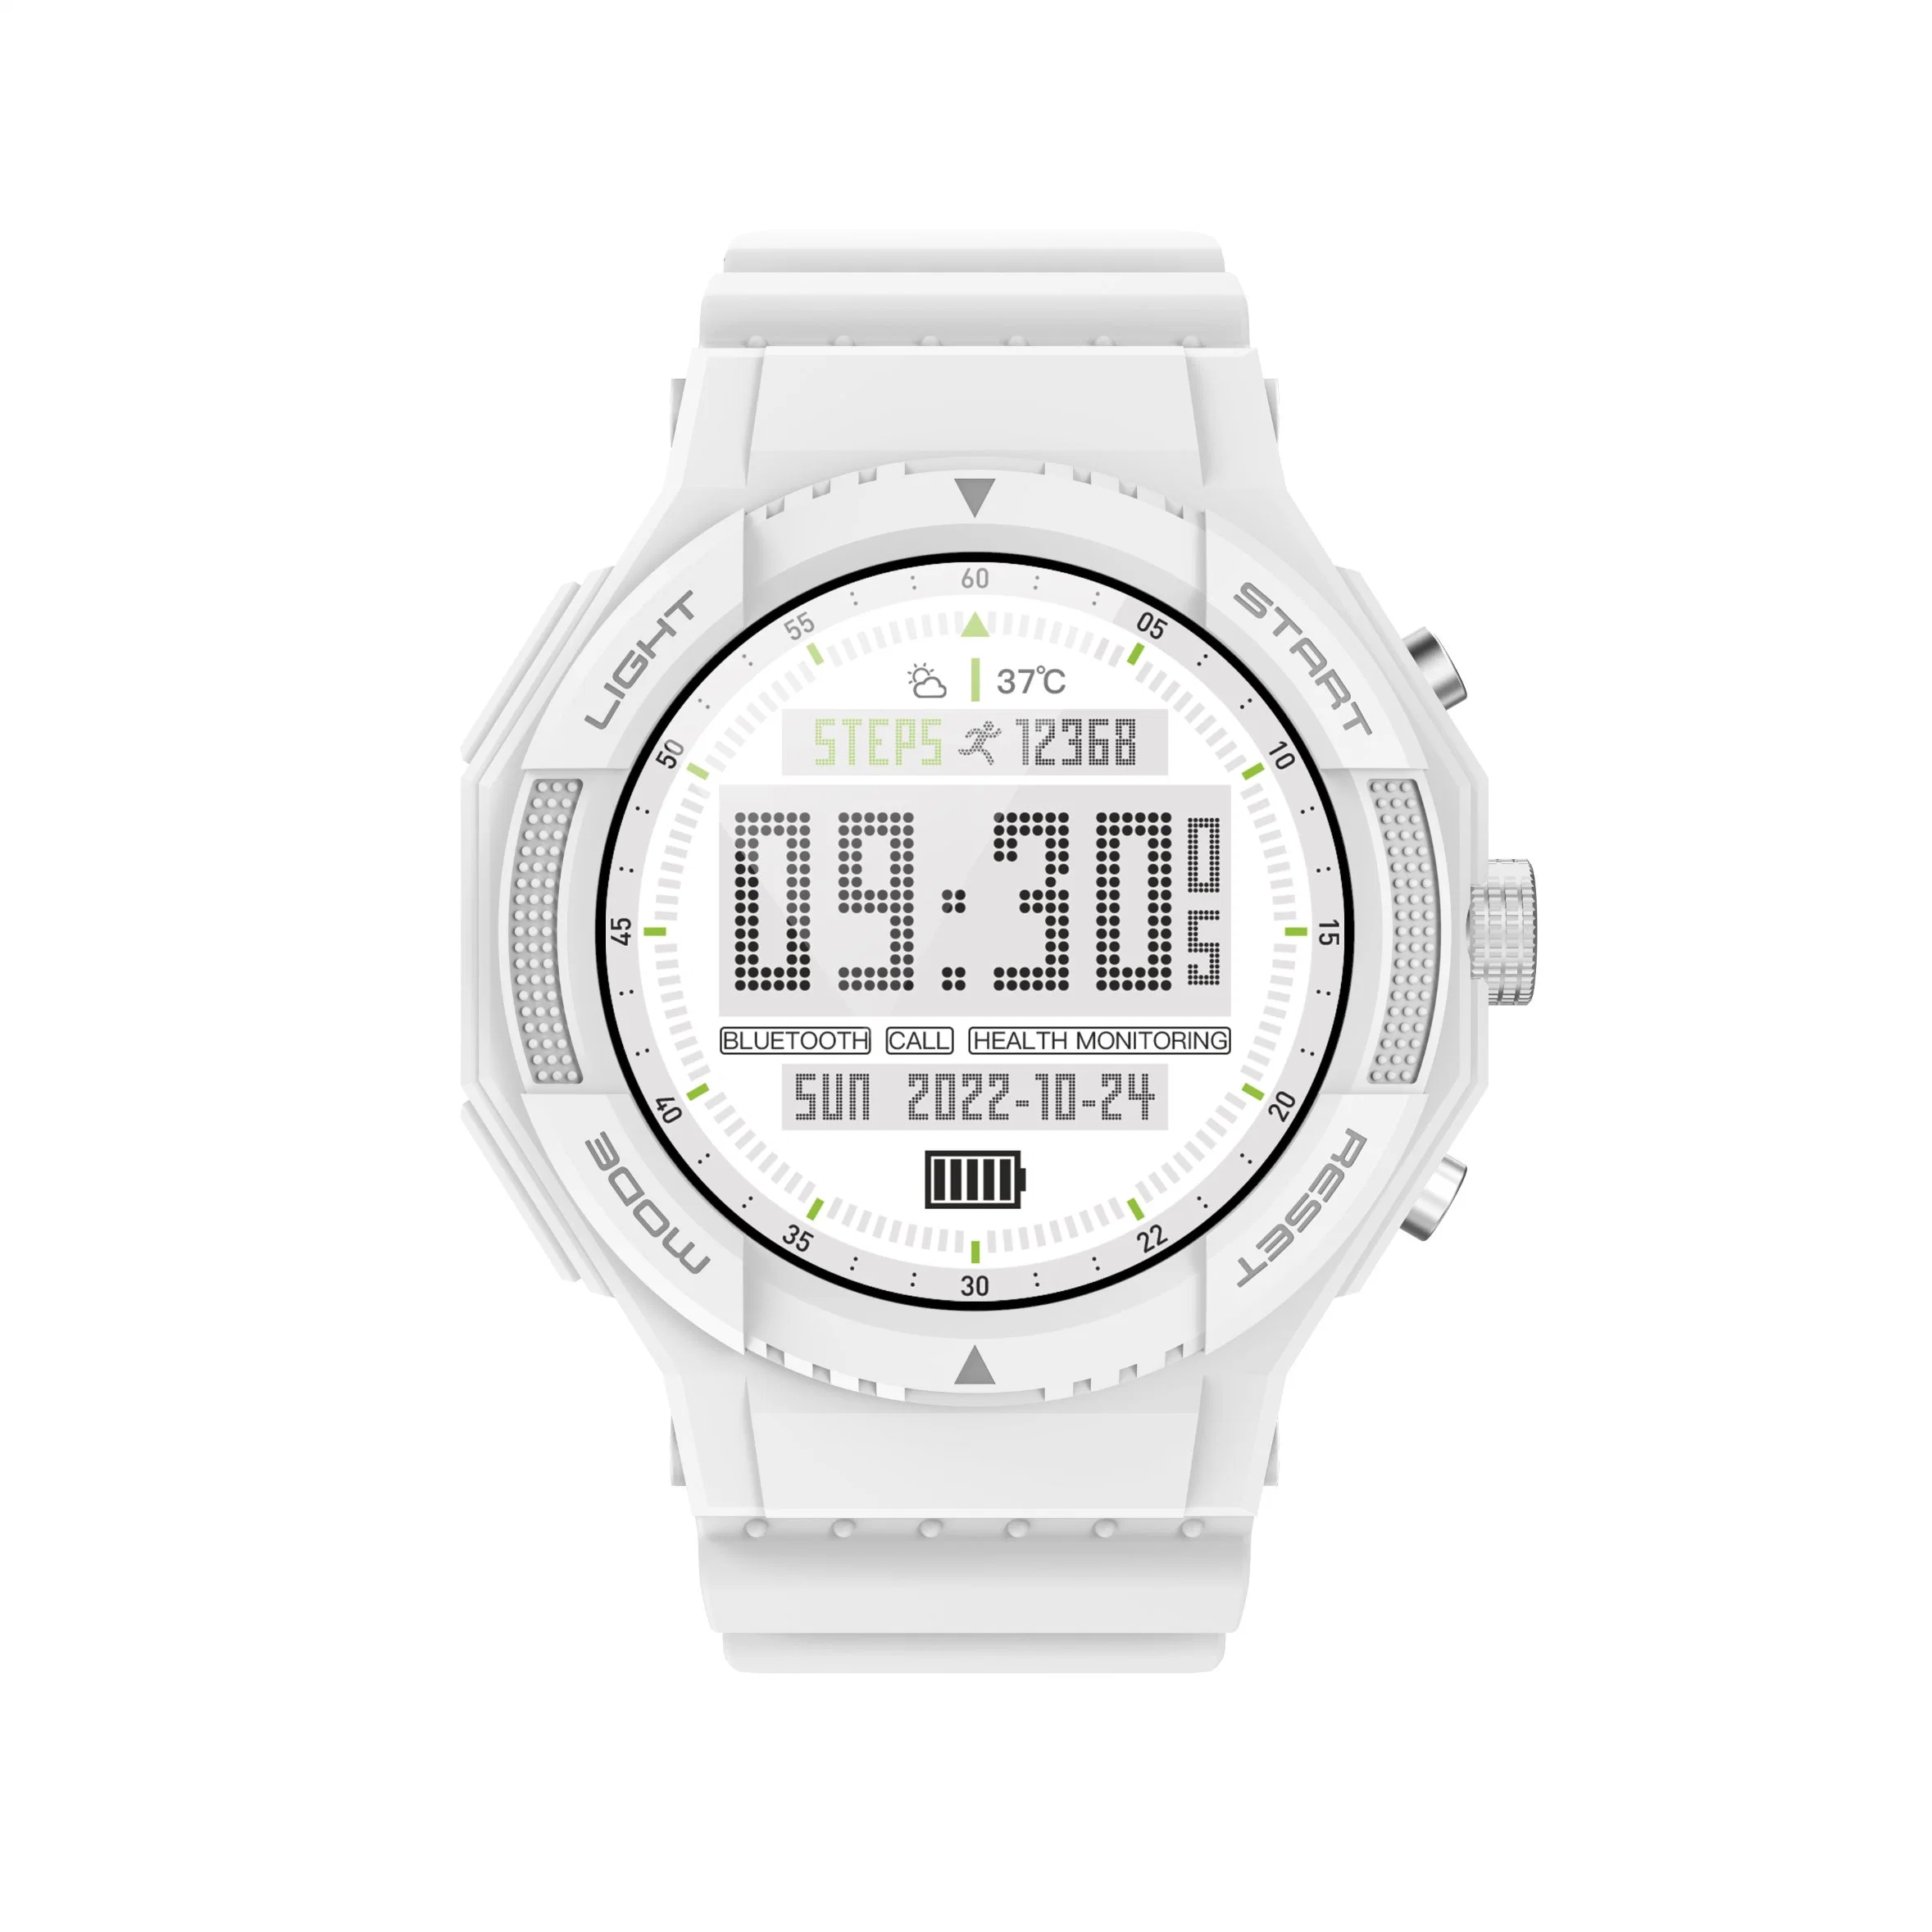 Neu Ankunft hohe Qualität G01 Sport Uhr 1,05inch Herzfrequenz GPS Smart Watch Phone für Android iOS